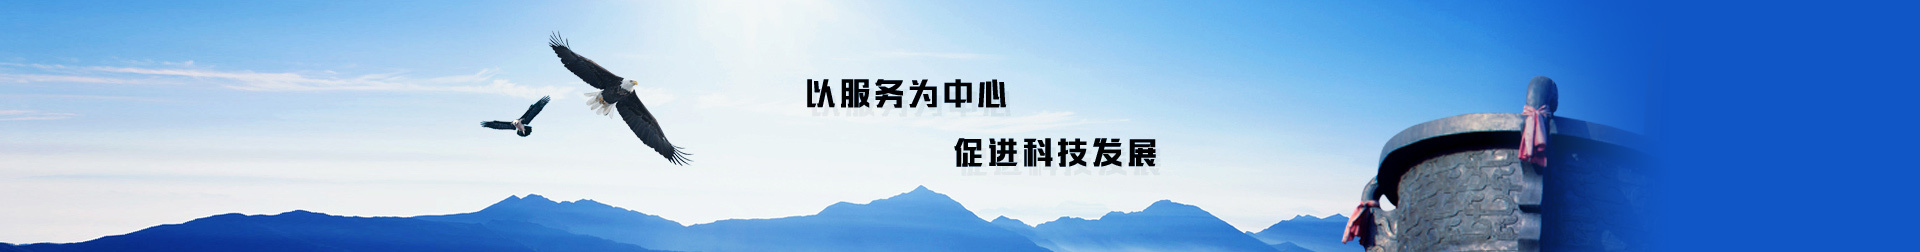 天津滨创生产力促进有限公司